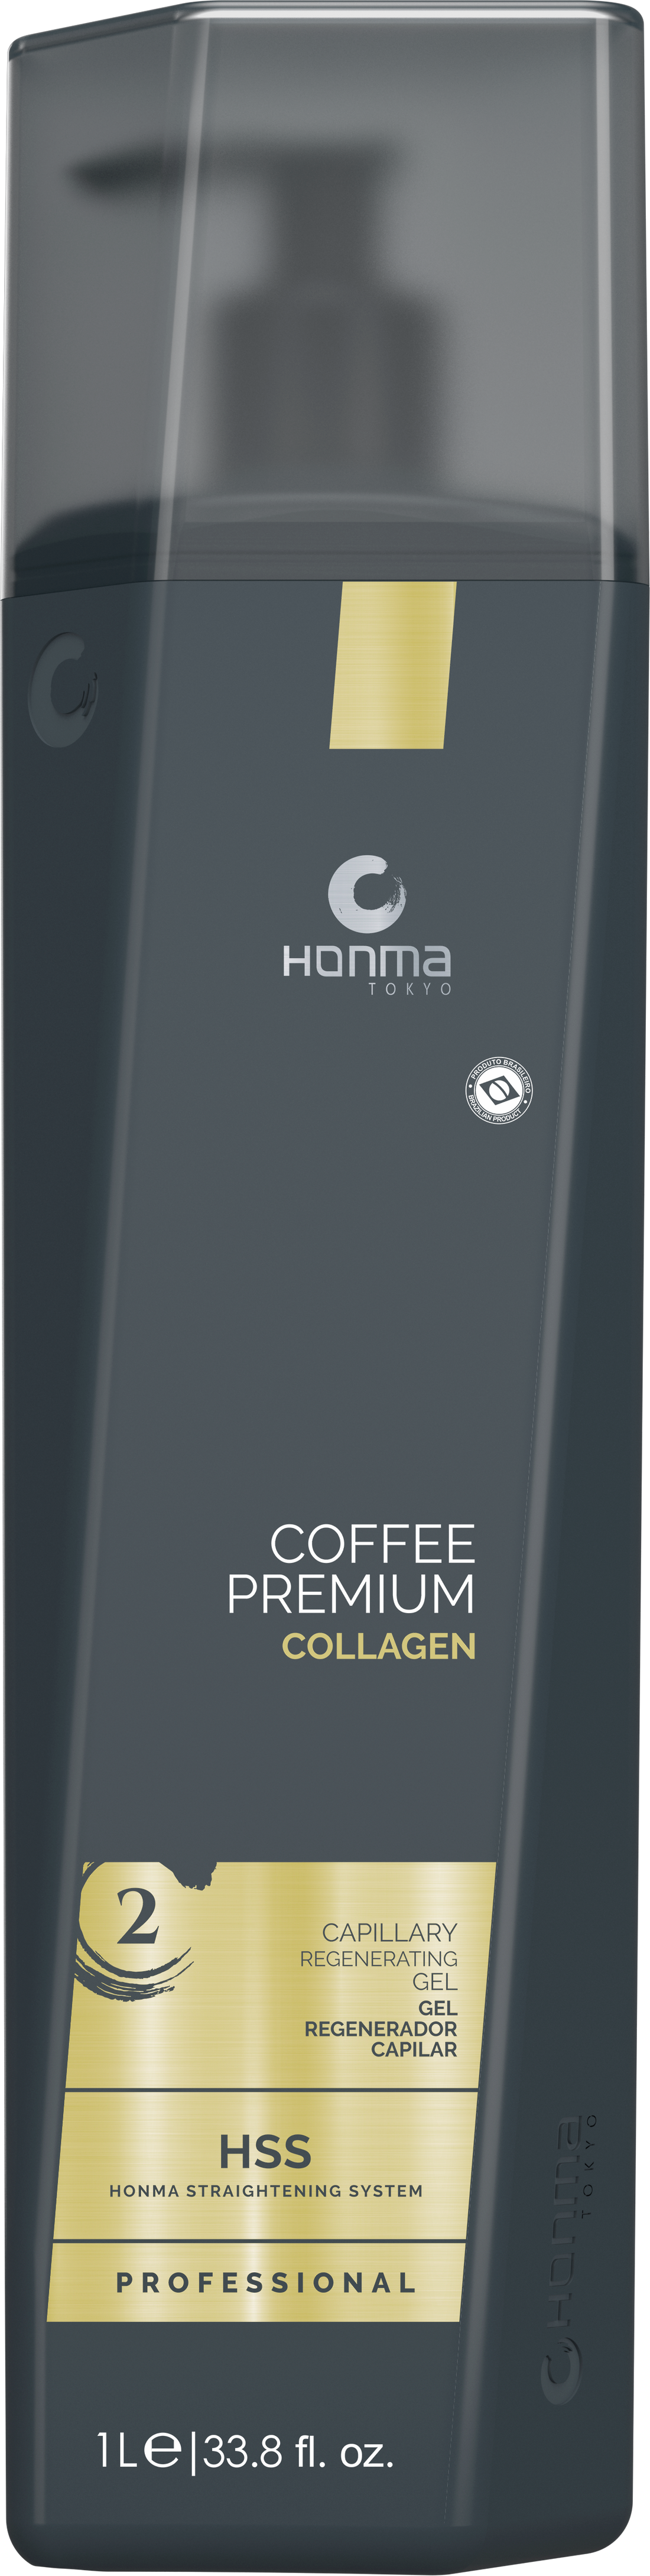 COFFEE PREMIUM COLLAGEN GEL REGENERADOR CAPILAR - PROFESSIONAL